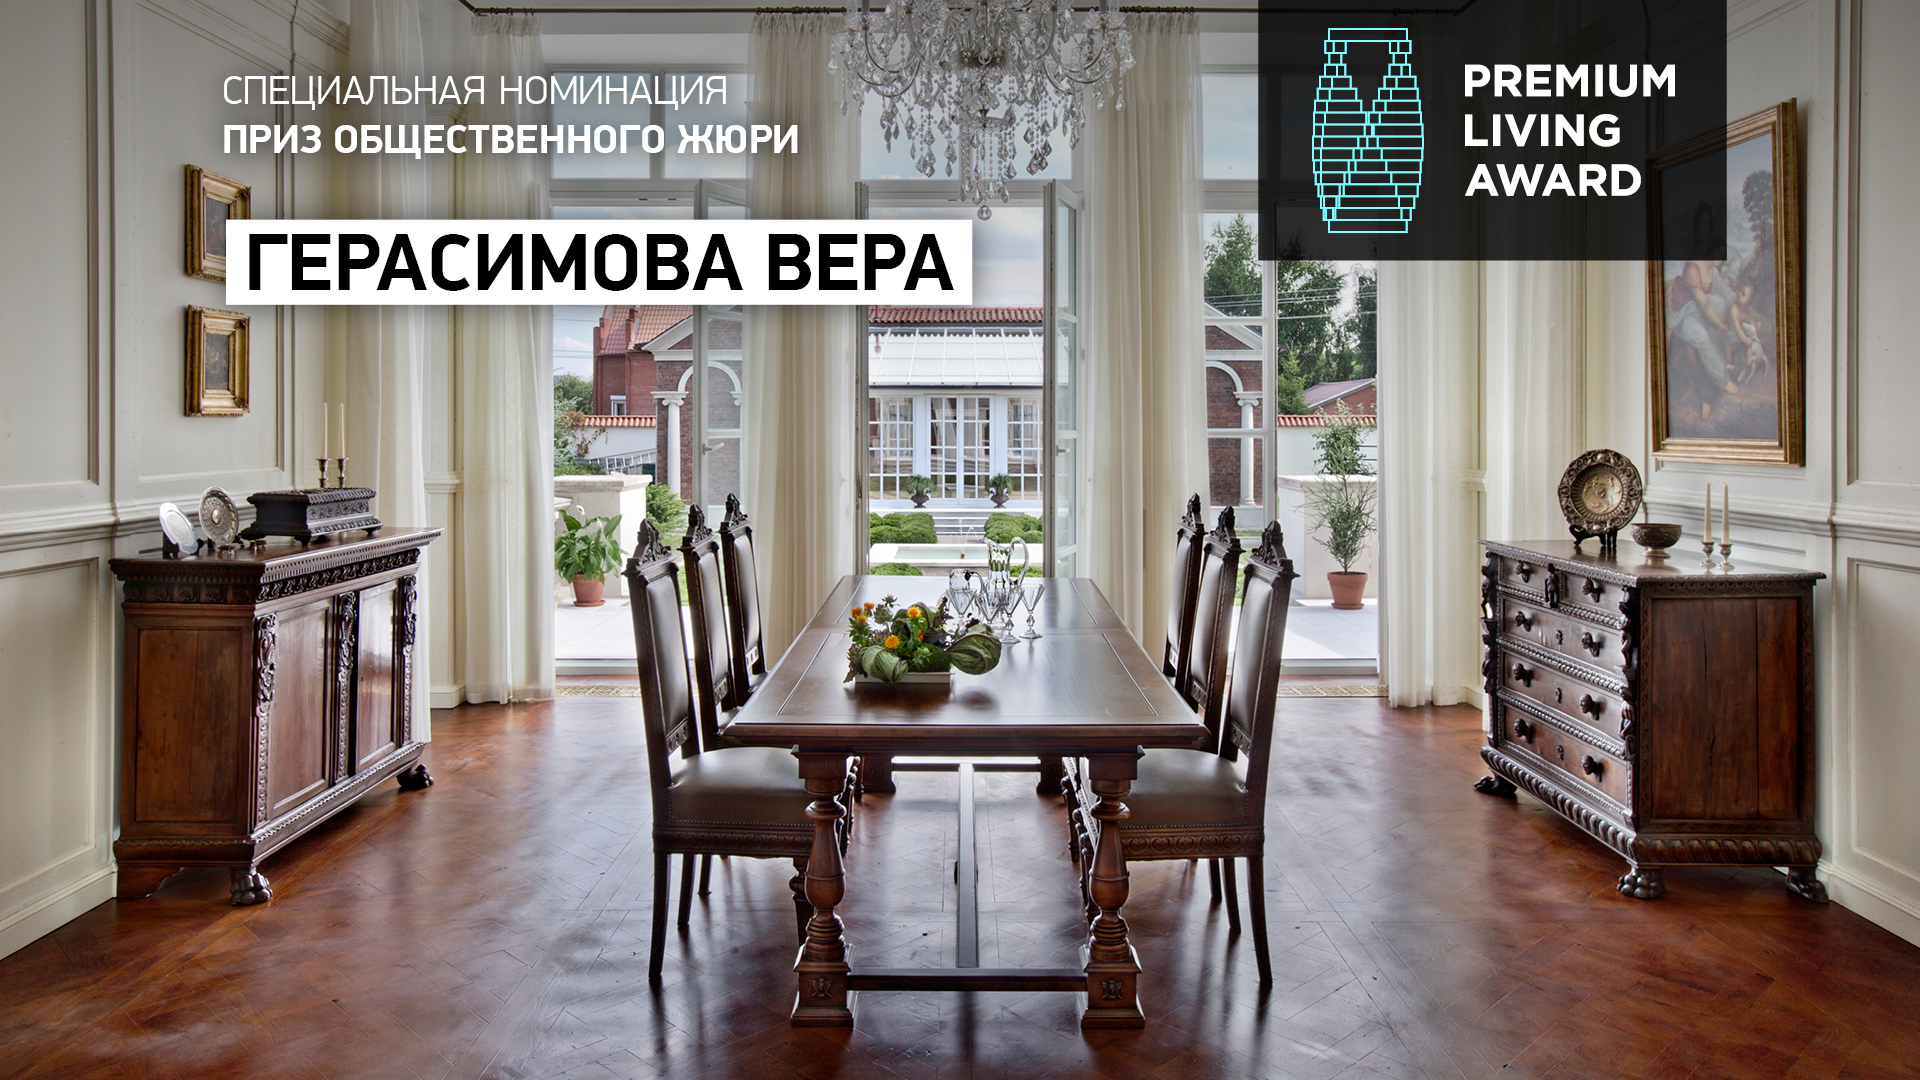 Приз Общественного жюри — архитектор Вера Герасимова, спроектировавшая интерьер частного дома в Новой Москве